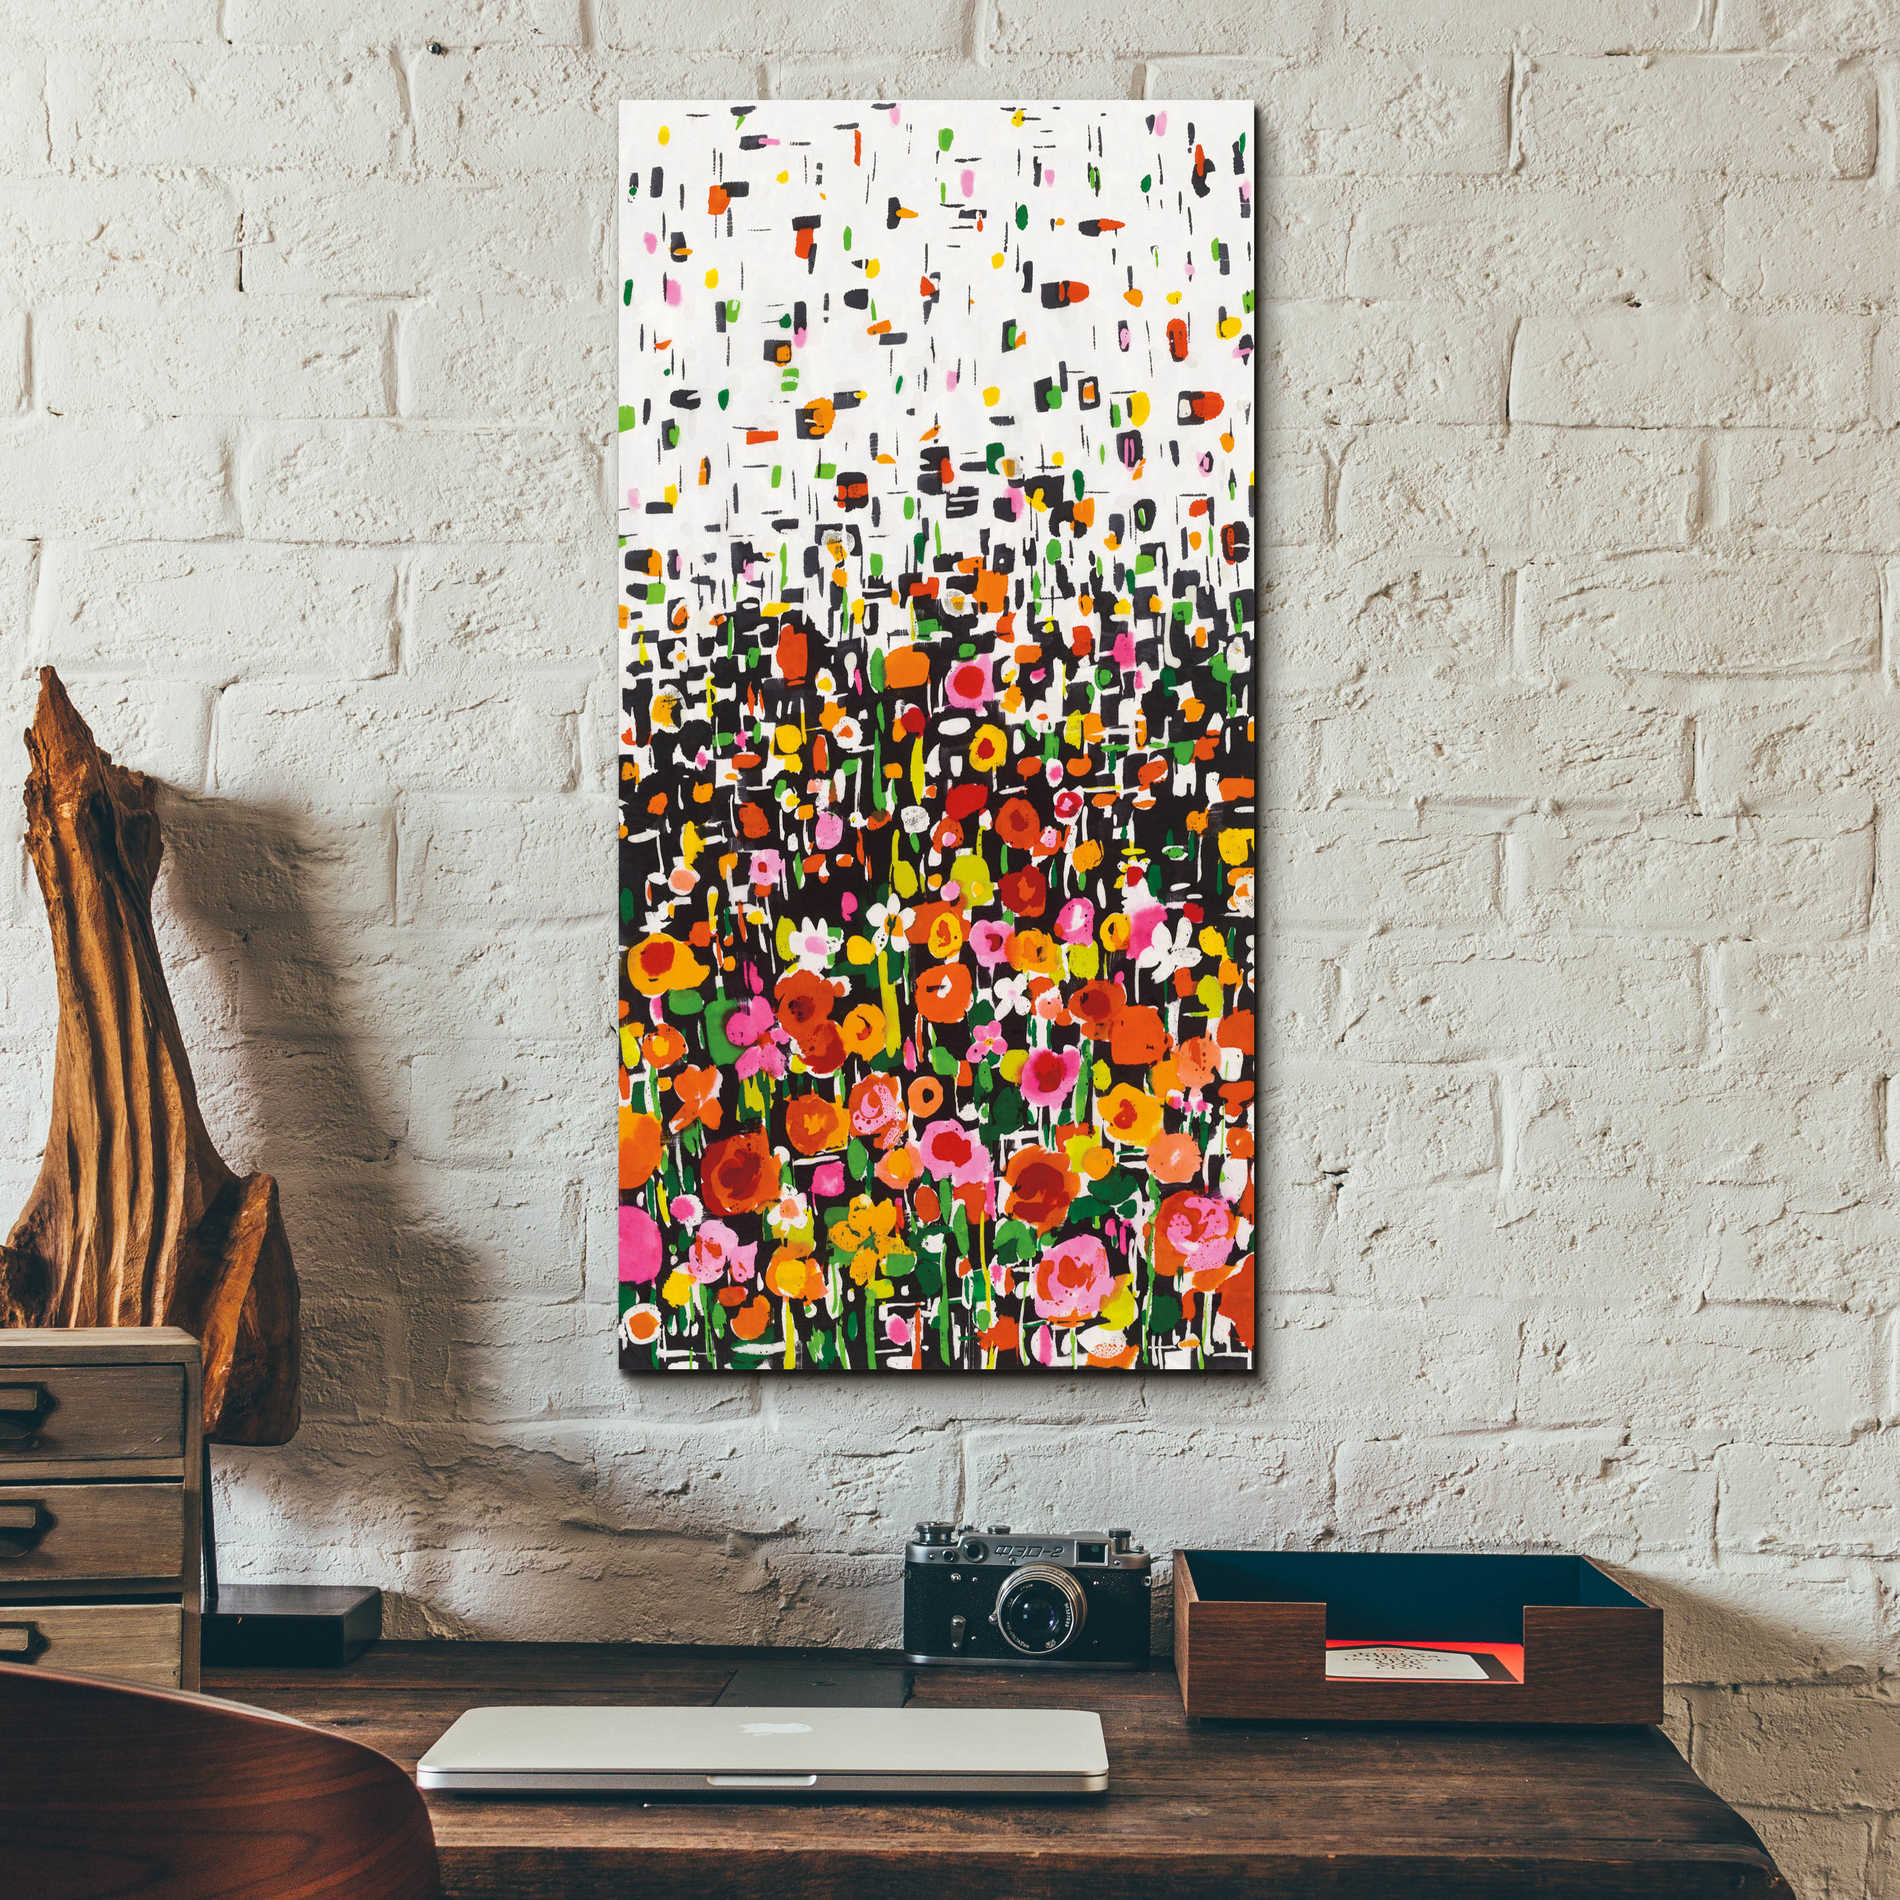 Epic Art 'Flower Shower' by Wild Apple Portfolio, Acrylic Glass Wall Art,12x24